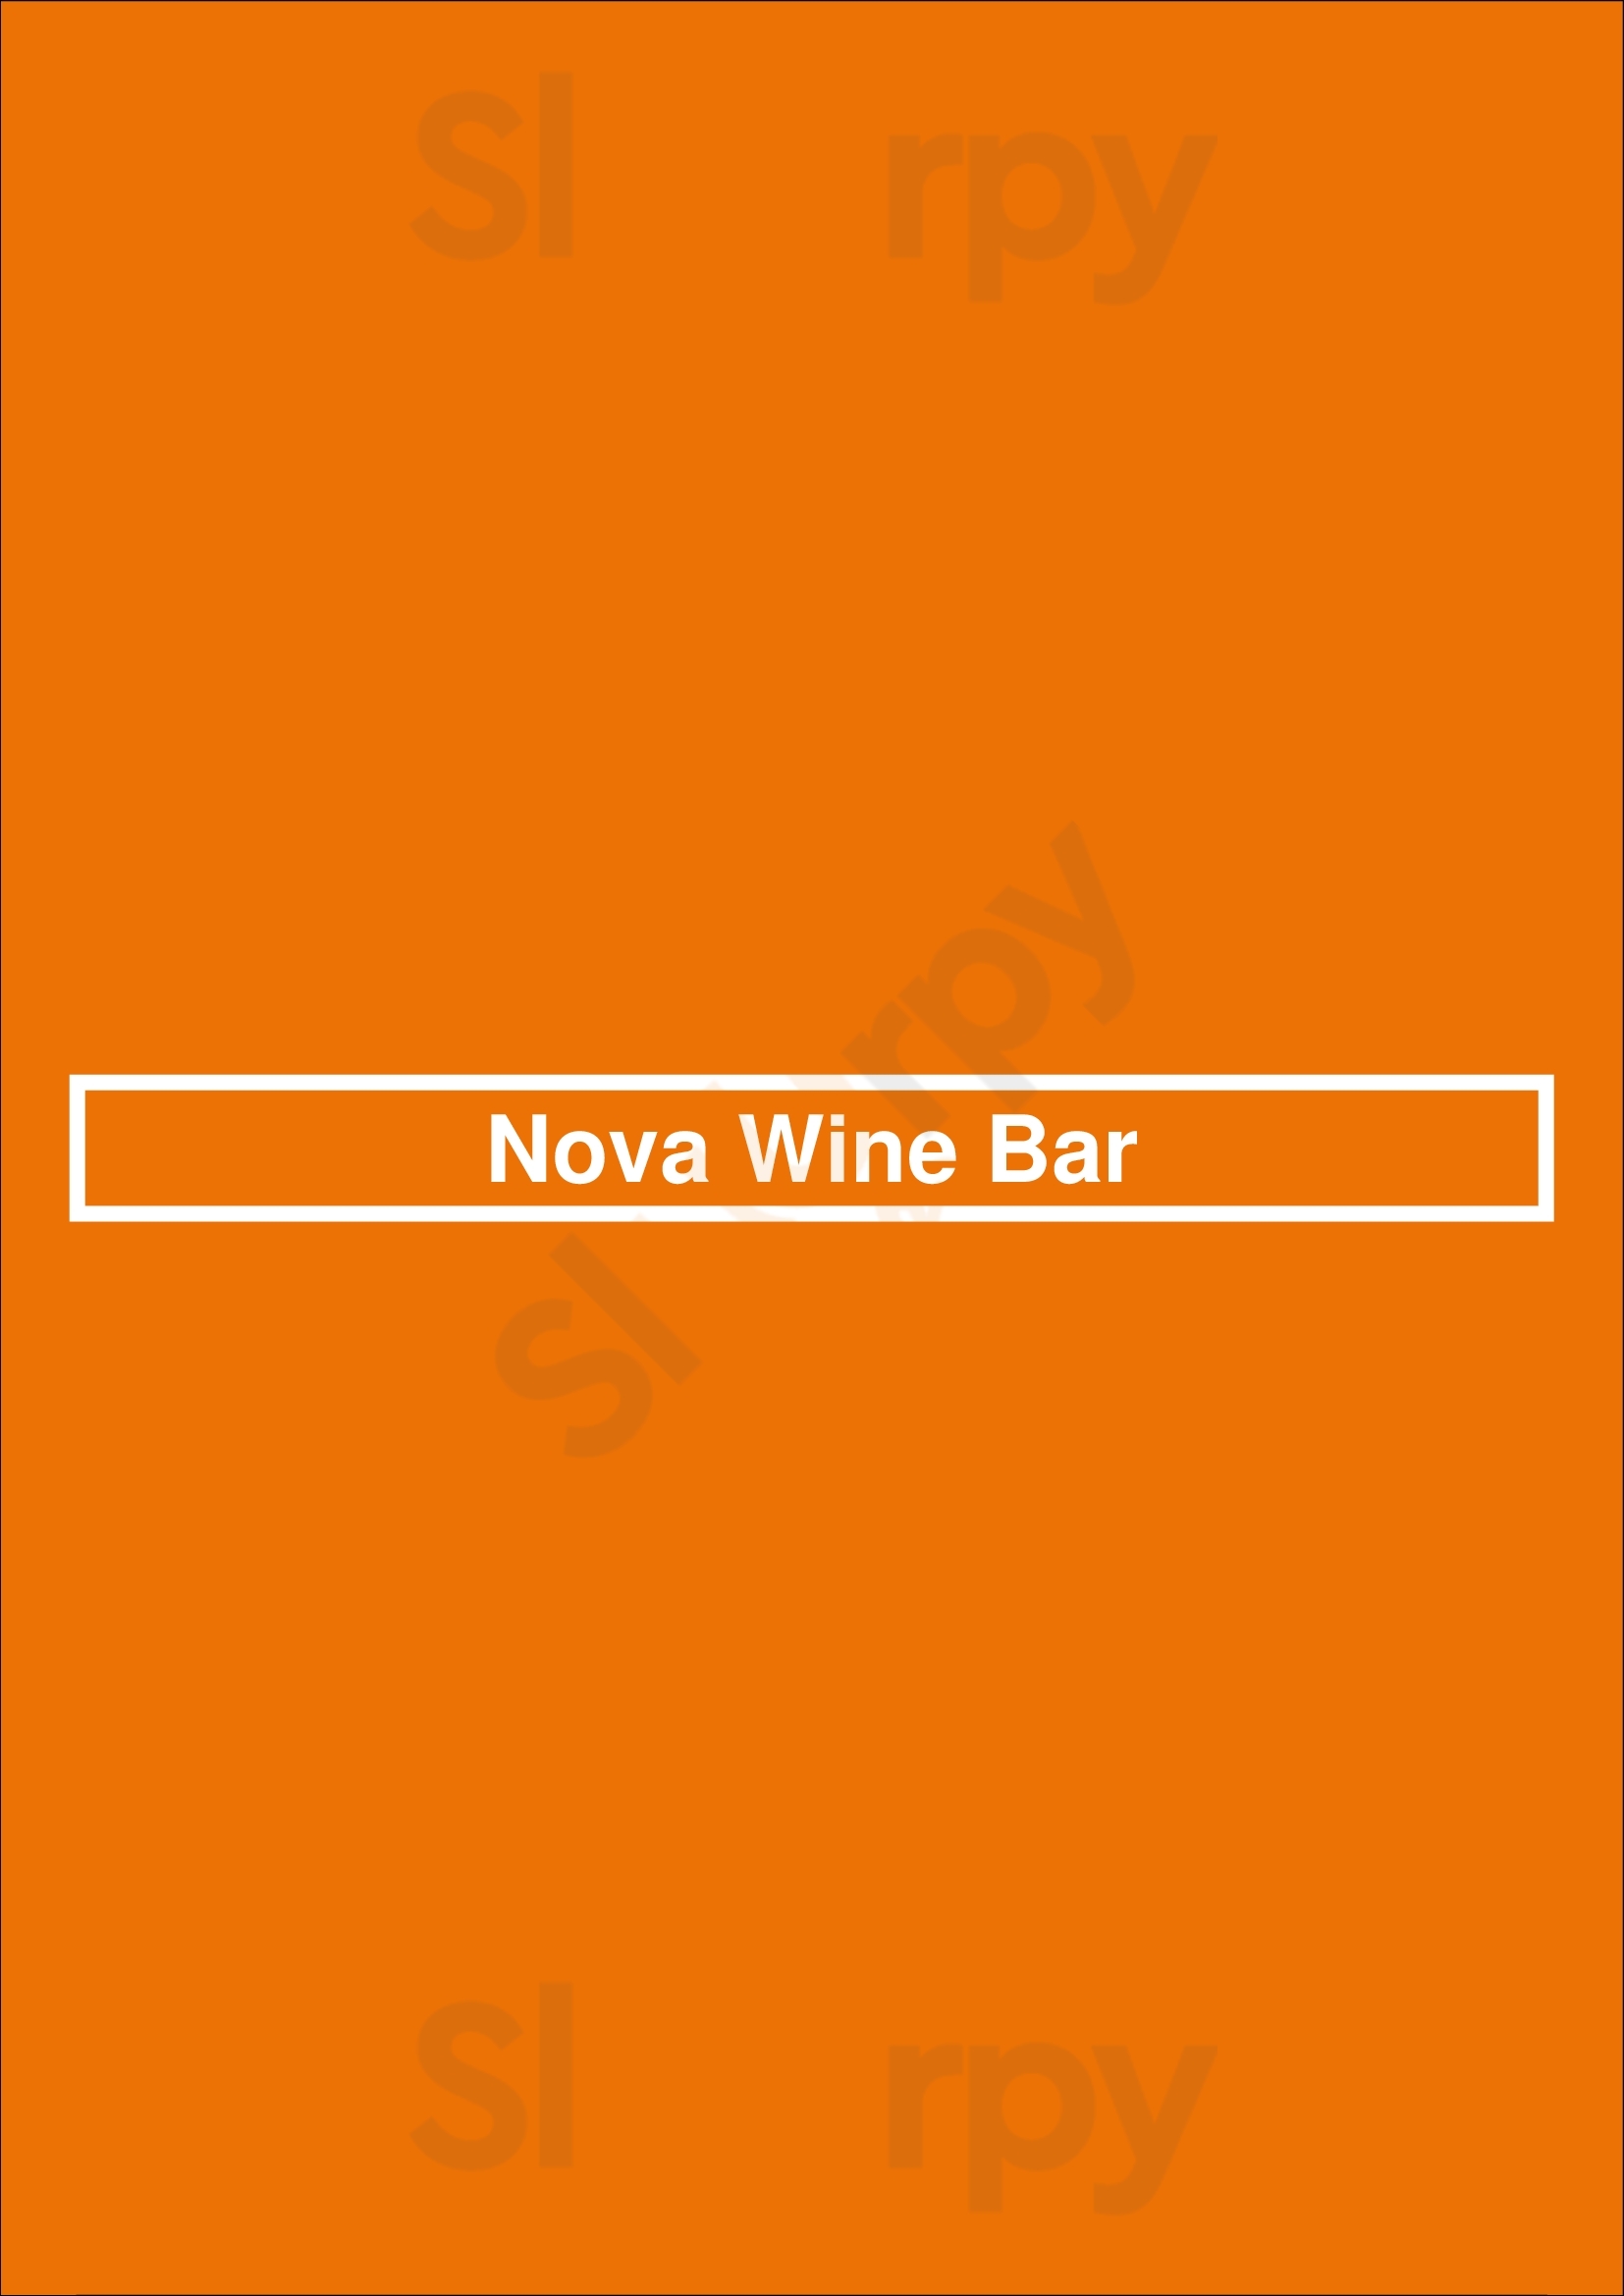 Nova Wine Bar Lisboa Menu - 1